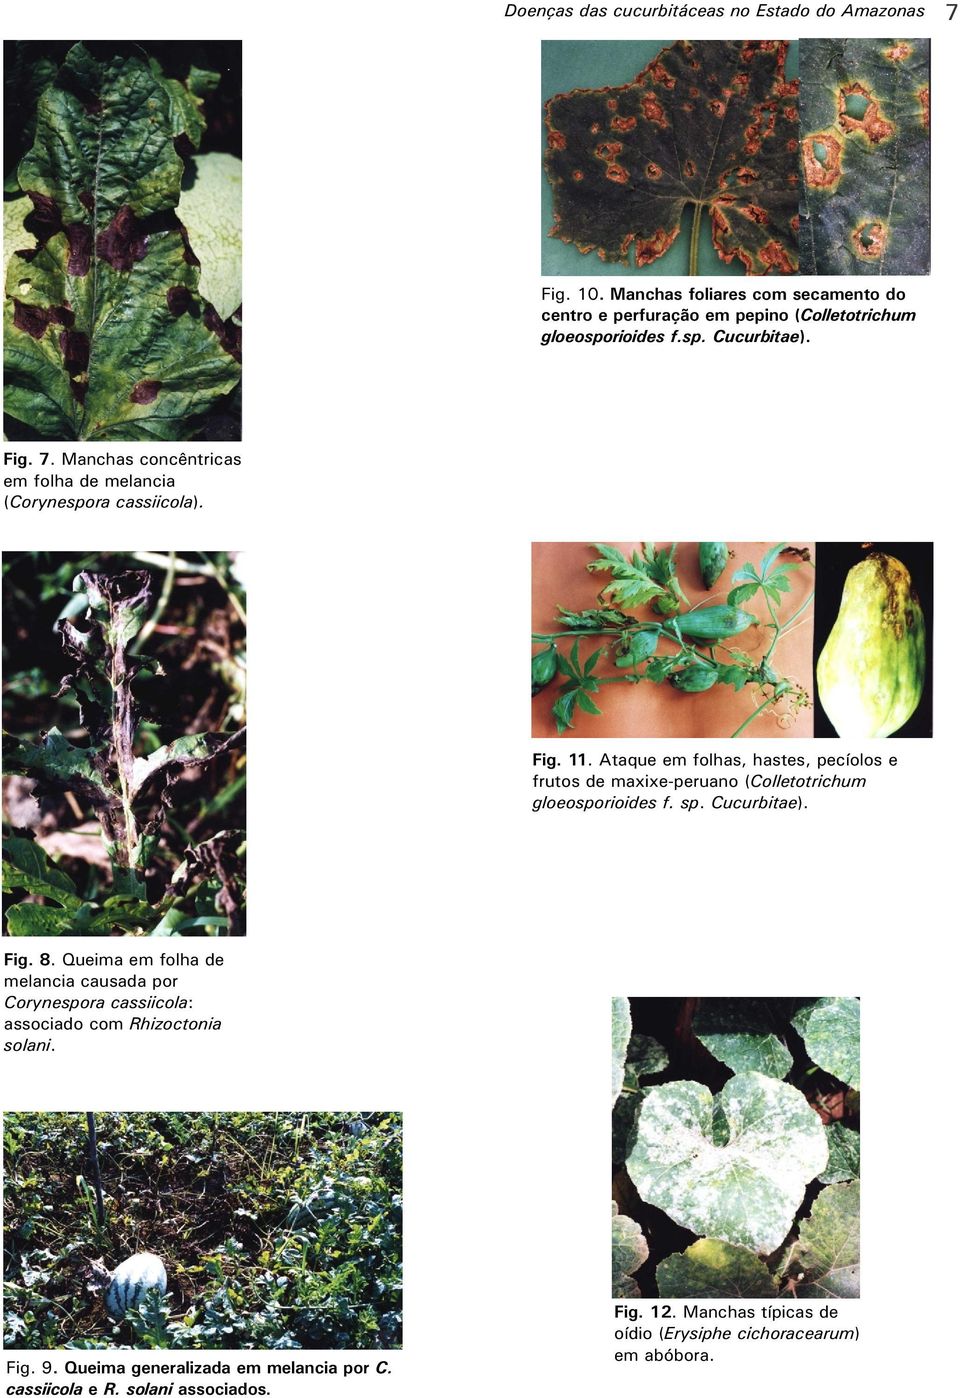 Ataque em folhas, hastes, pecíolos e frutos de maxixe-peruano (Colletotrichum gloeosporioides f. sp. Cucurbitae). Fig. 8.